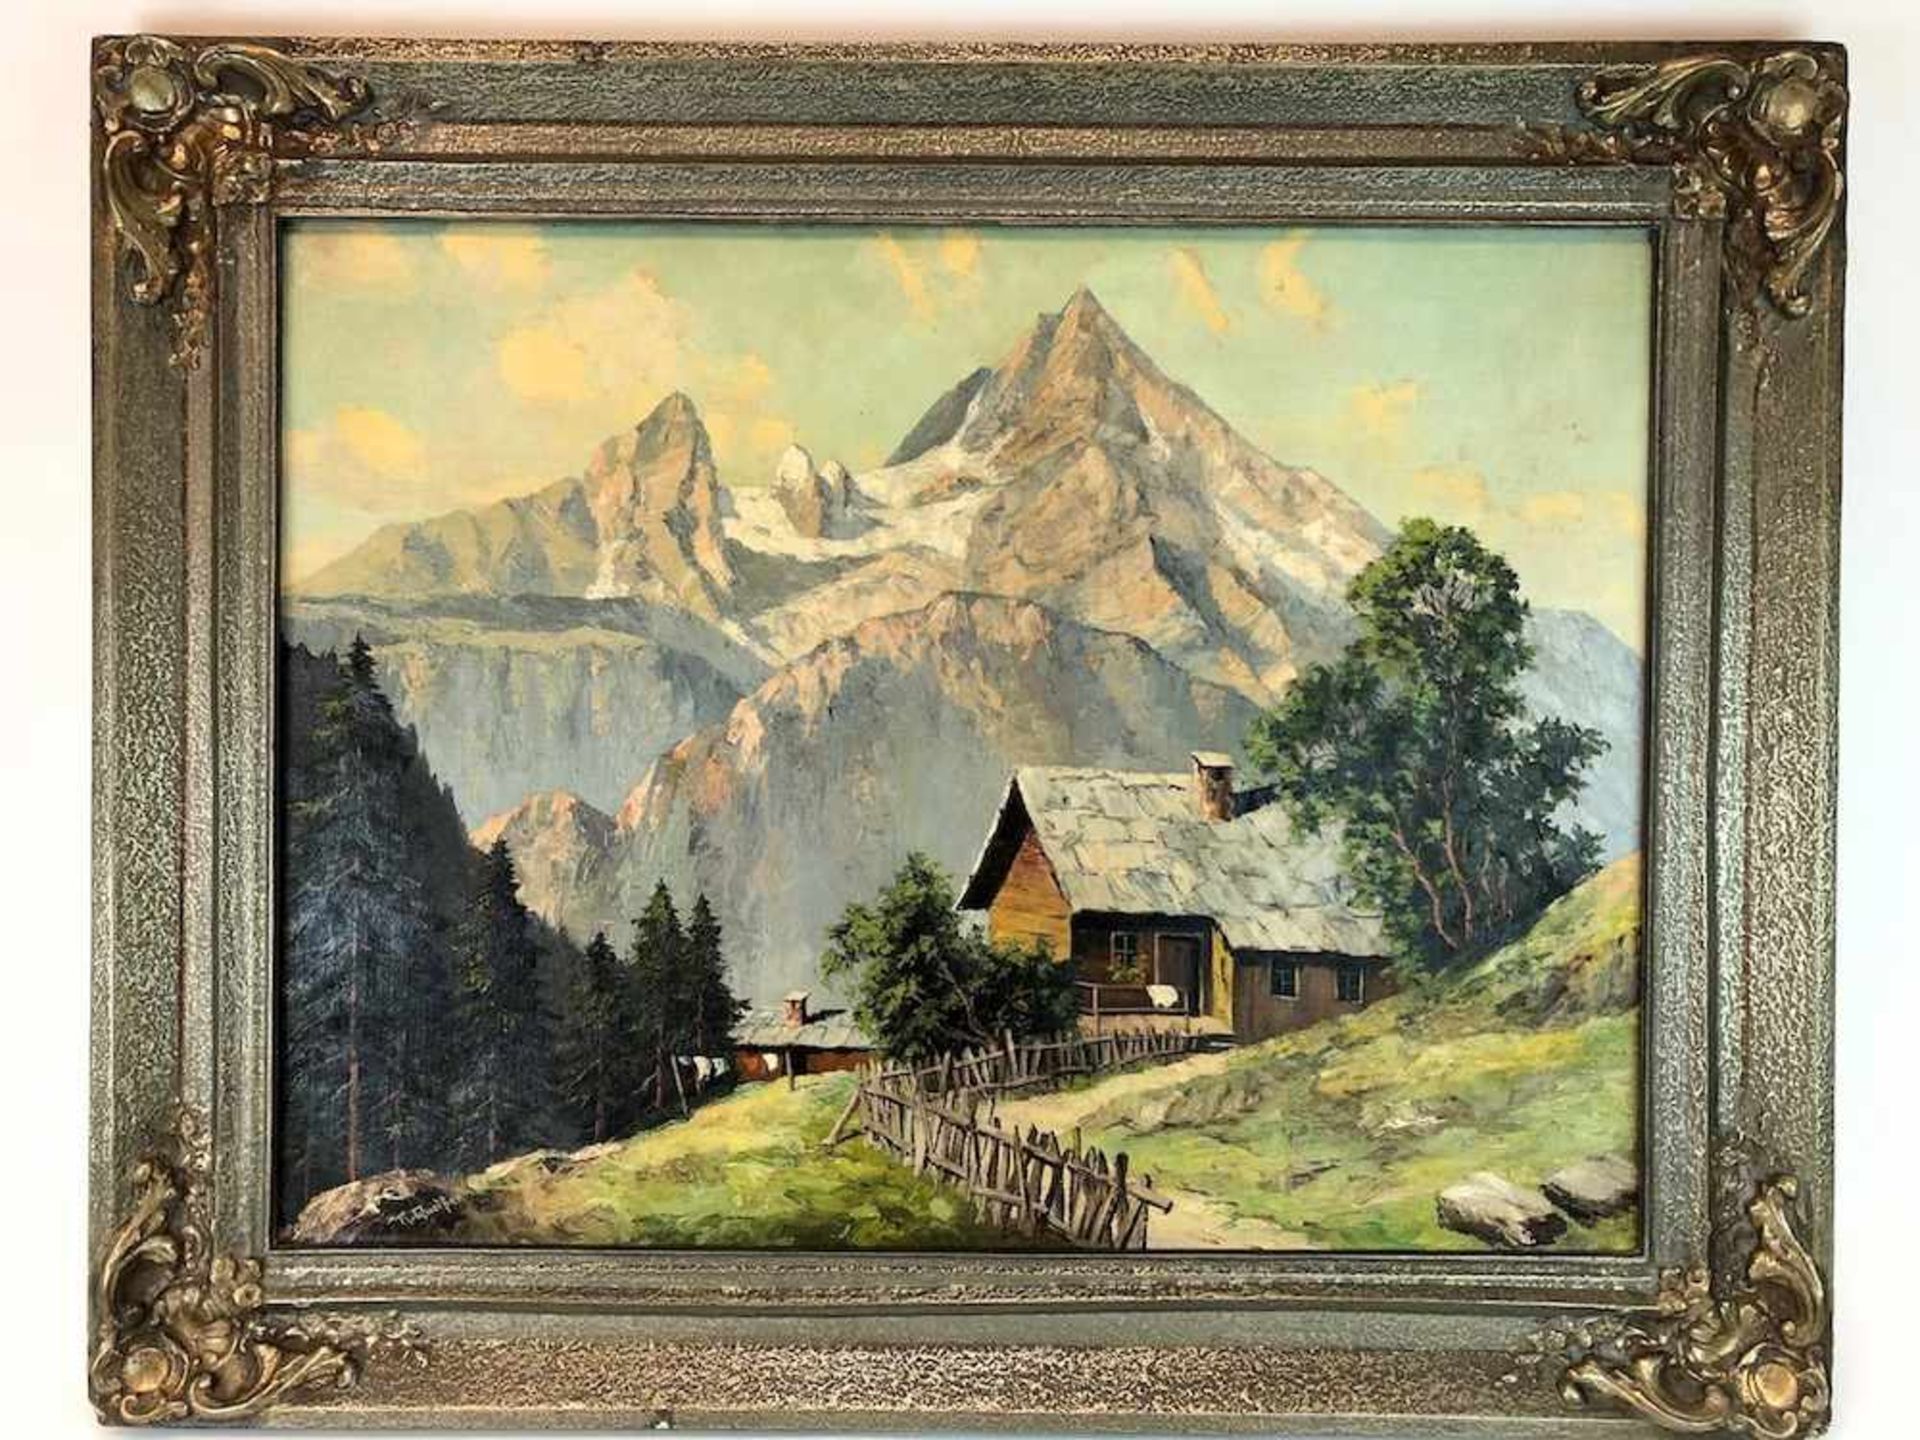 R. Queißer: Bauernhaus vor Alpen Panorama. Öl auf Leinwand. Frühes 20. Jh.Gemälde, Öl auf